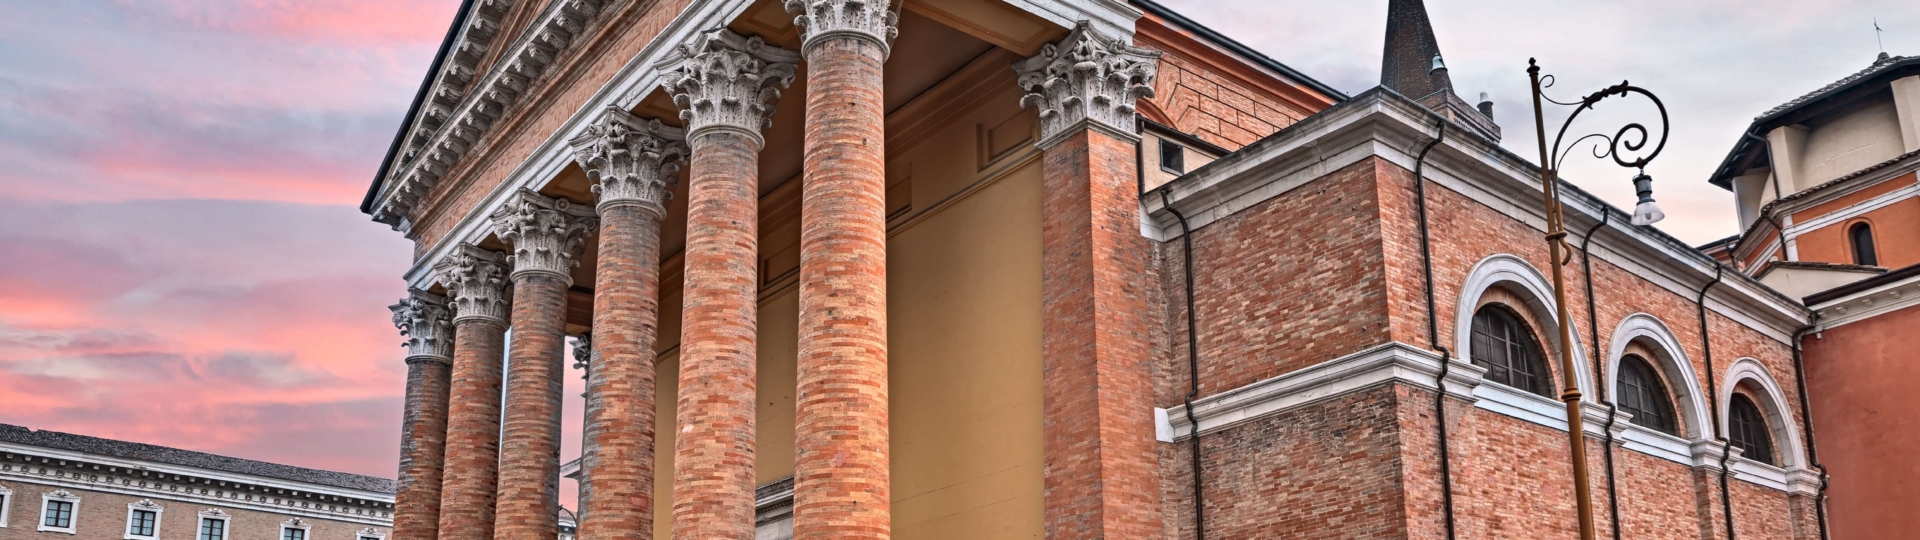 2. Forlì esterno chiesa cattolica